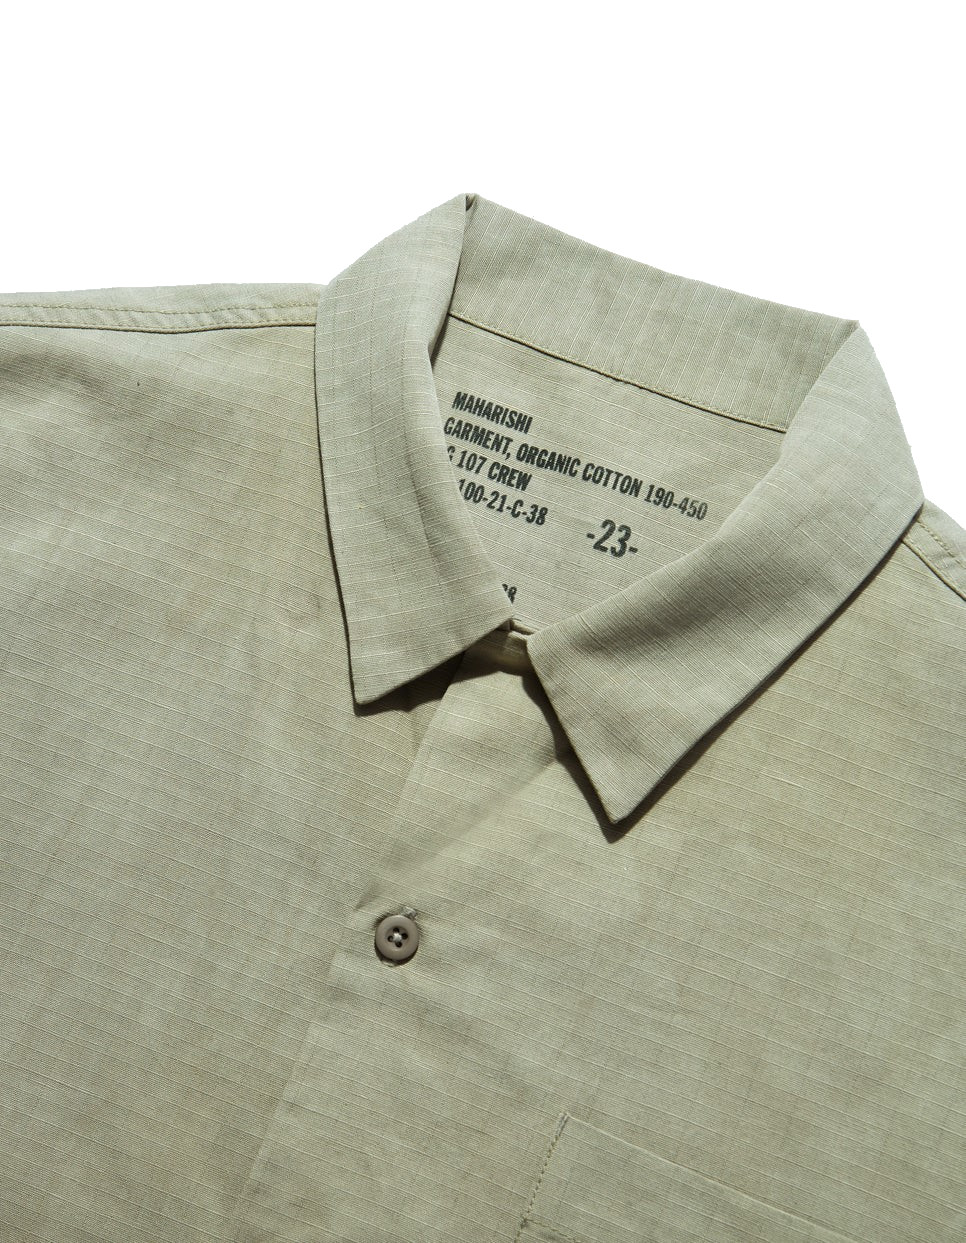 MAHARISHI 4325 Camp Collar Shirt in Silver Sage M